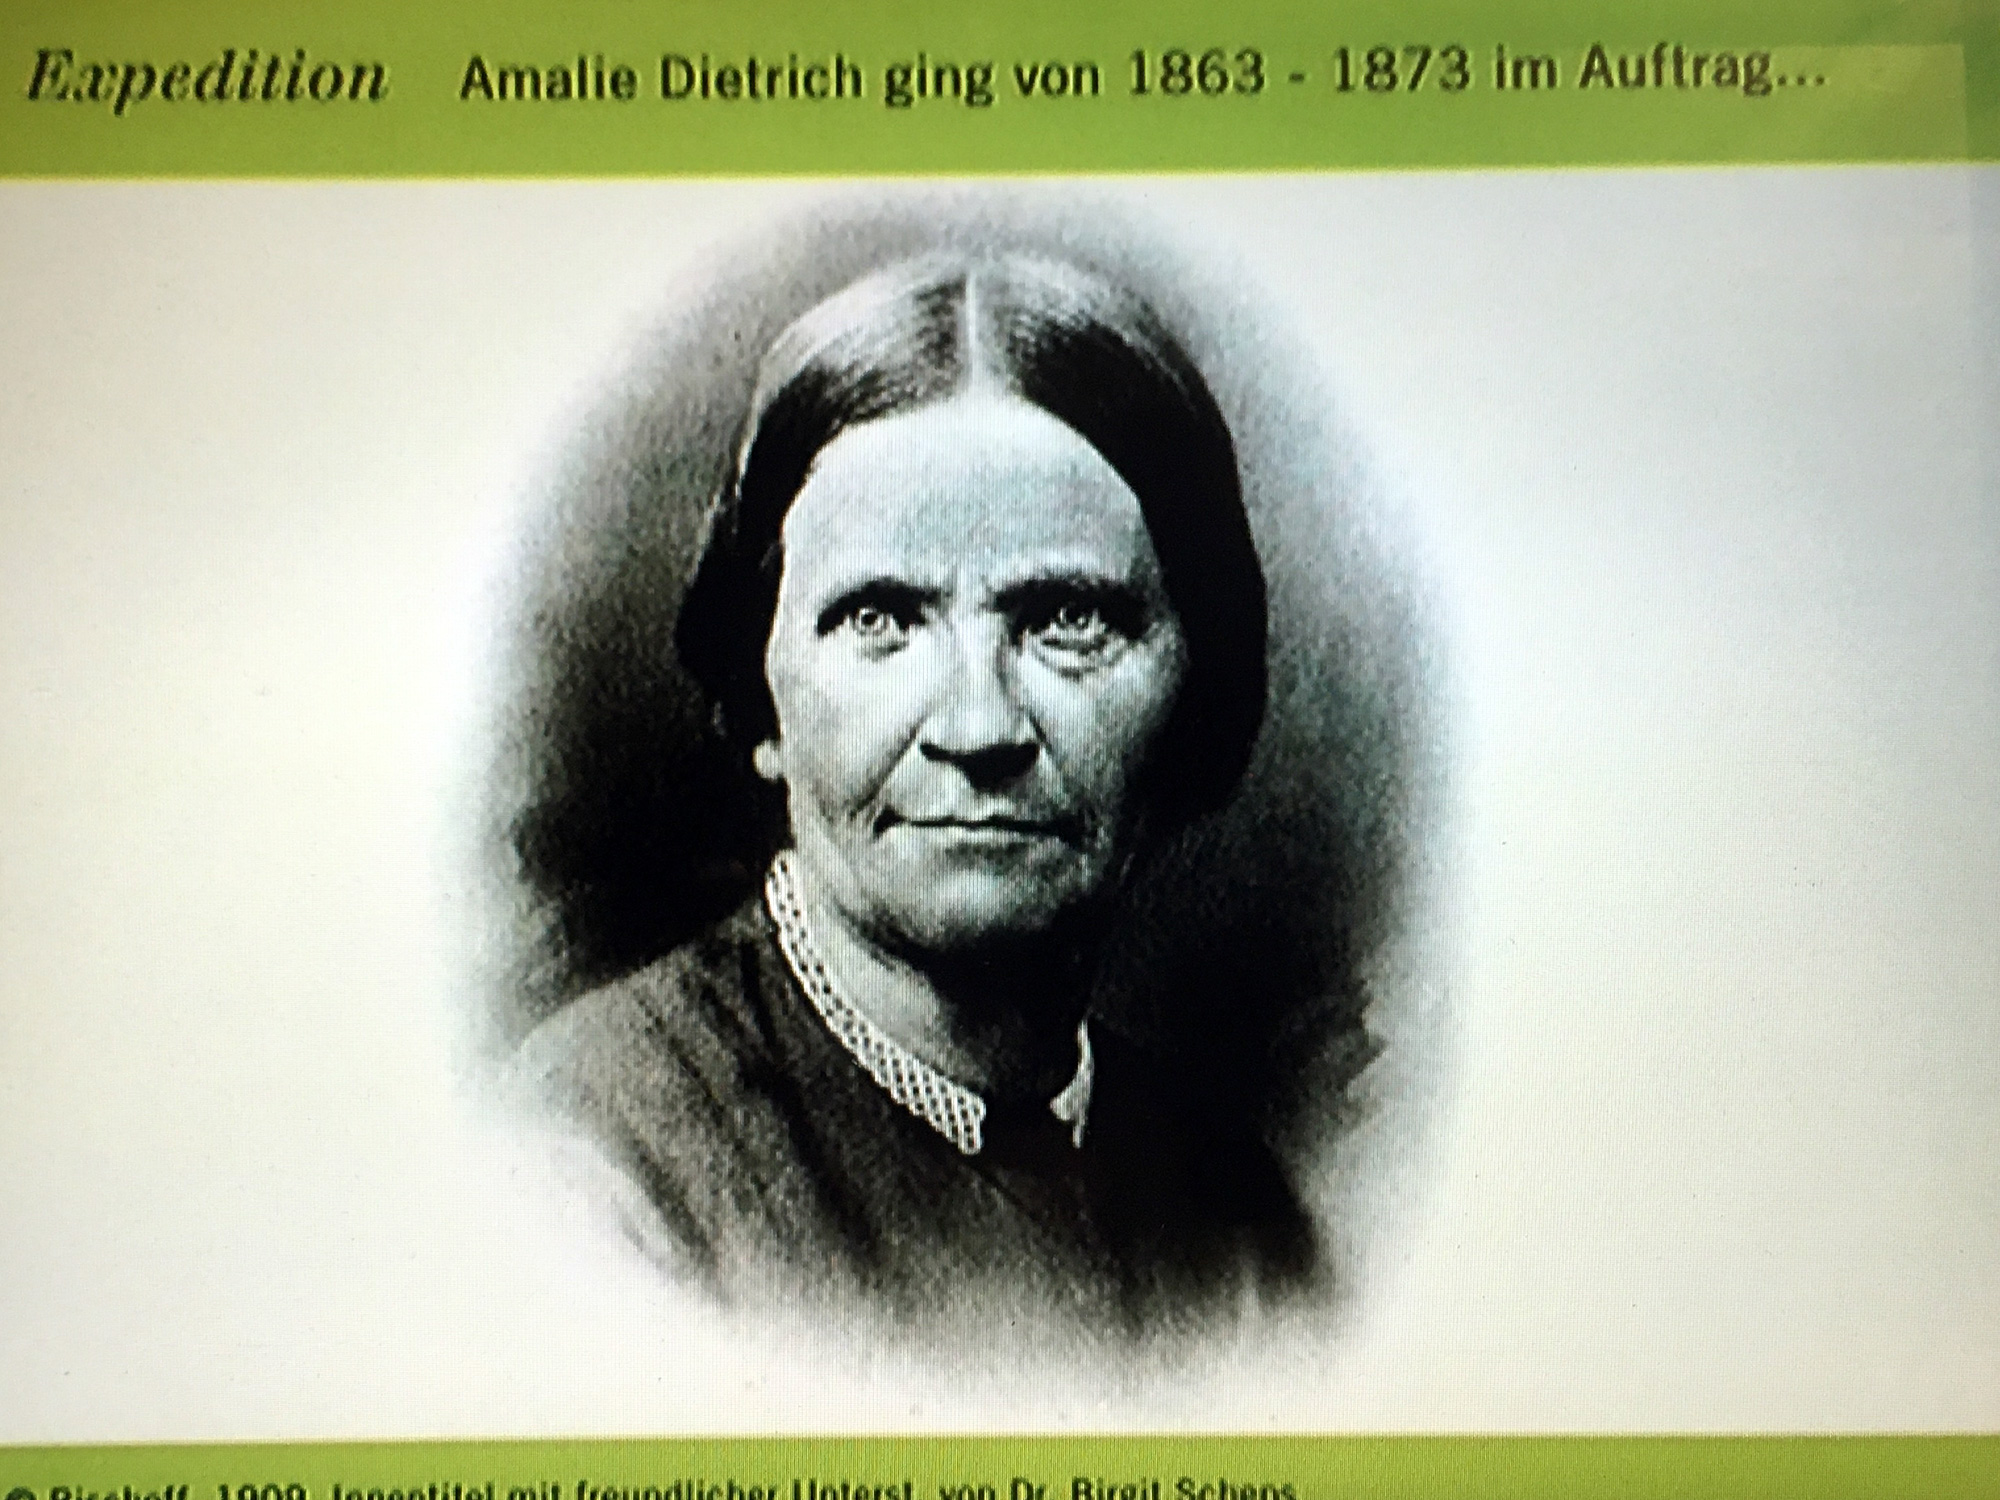 Reprografie Amalie Dietrich im Museum für Naturkunde, Berlin ©K. Schwahlen 2019